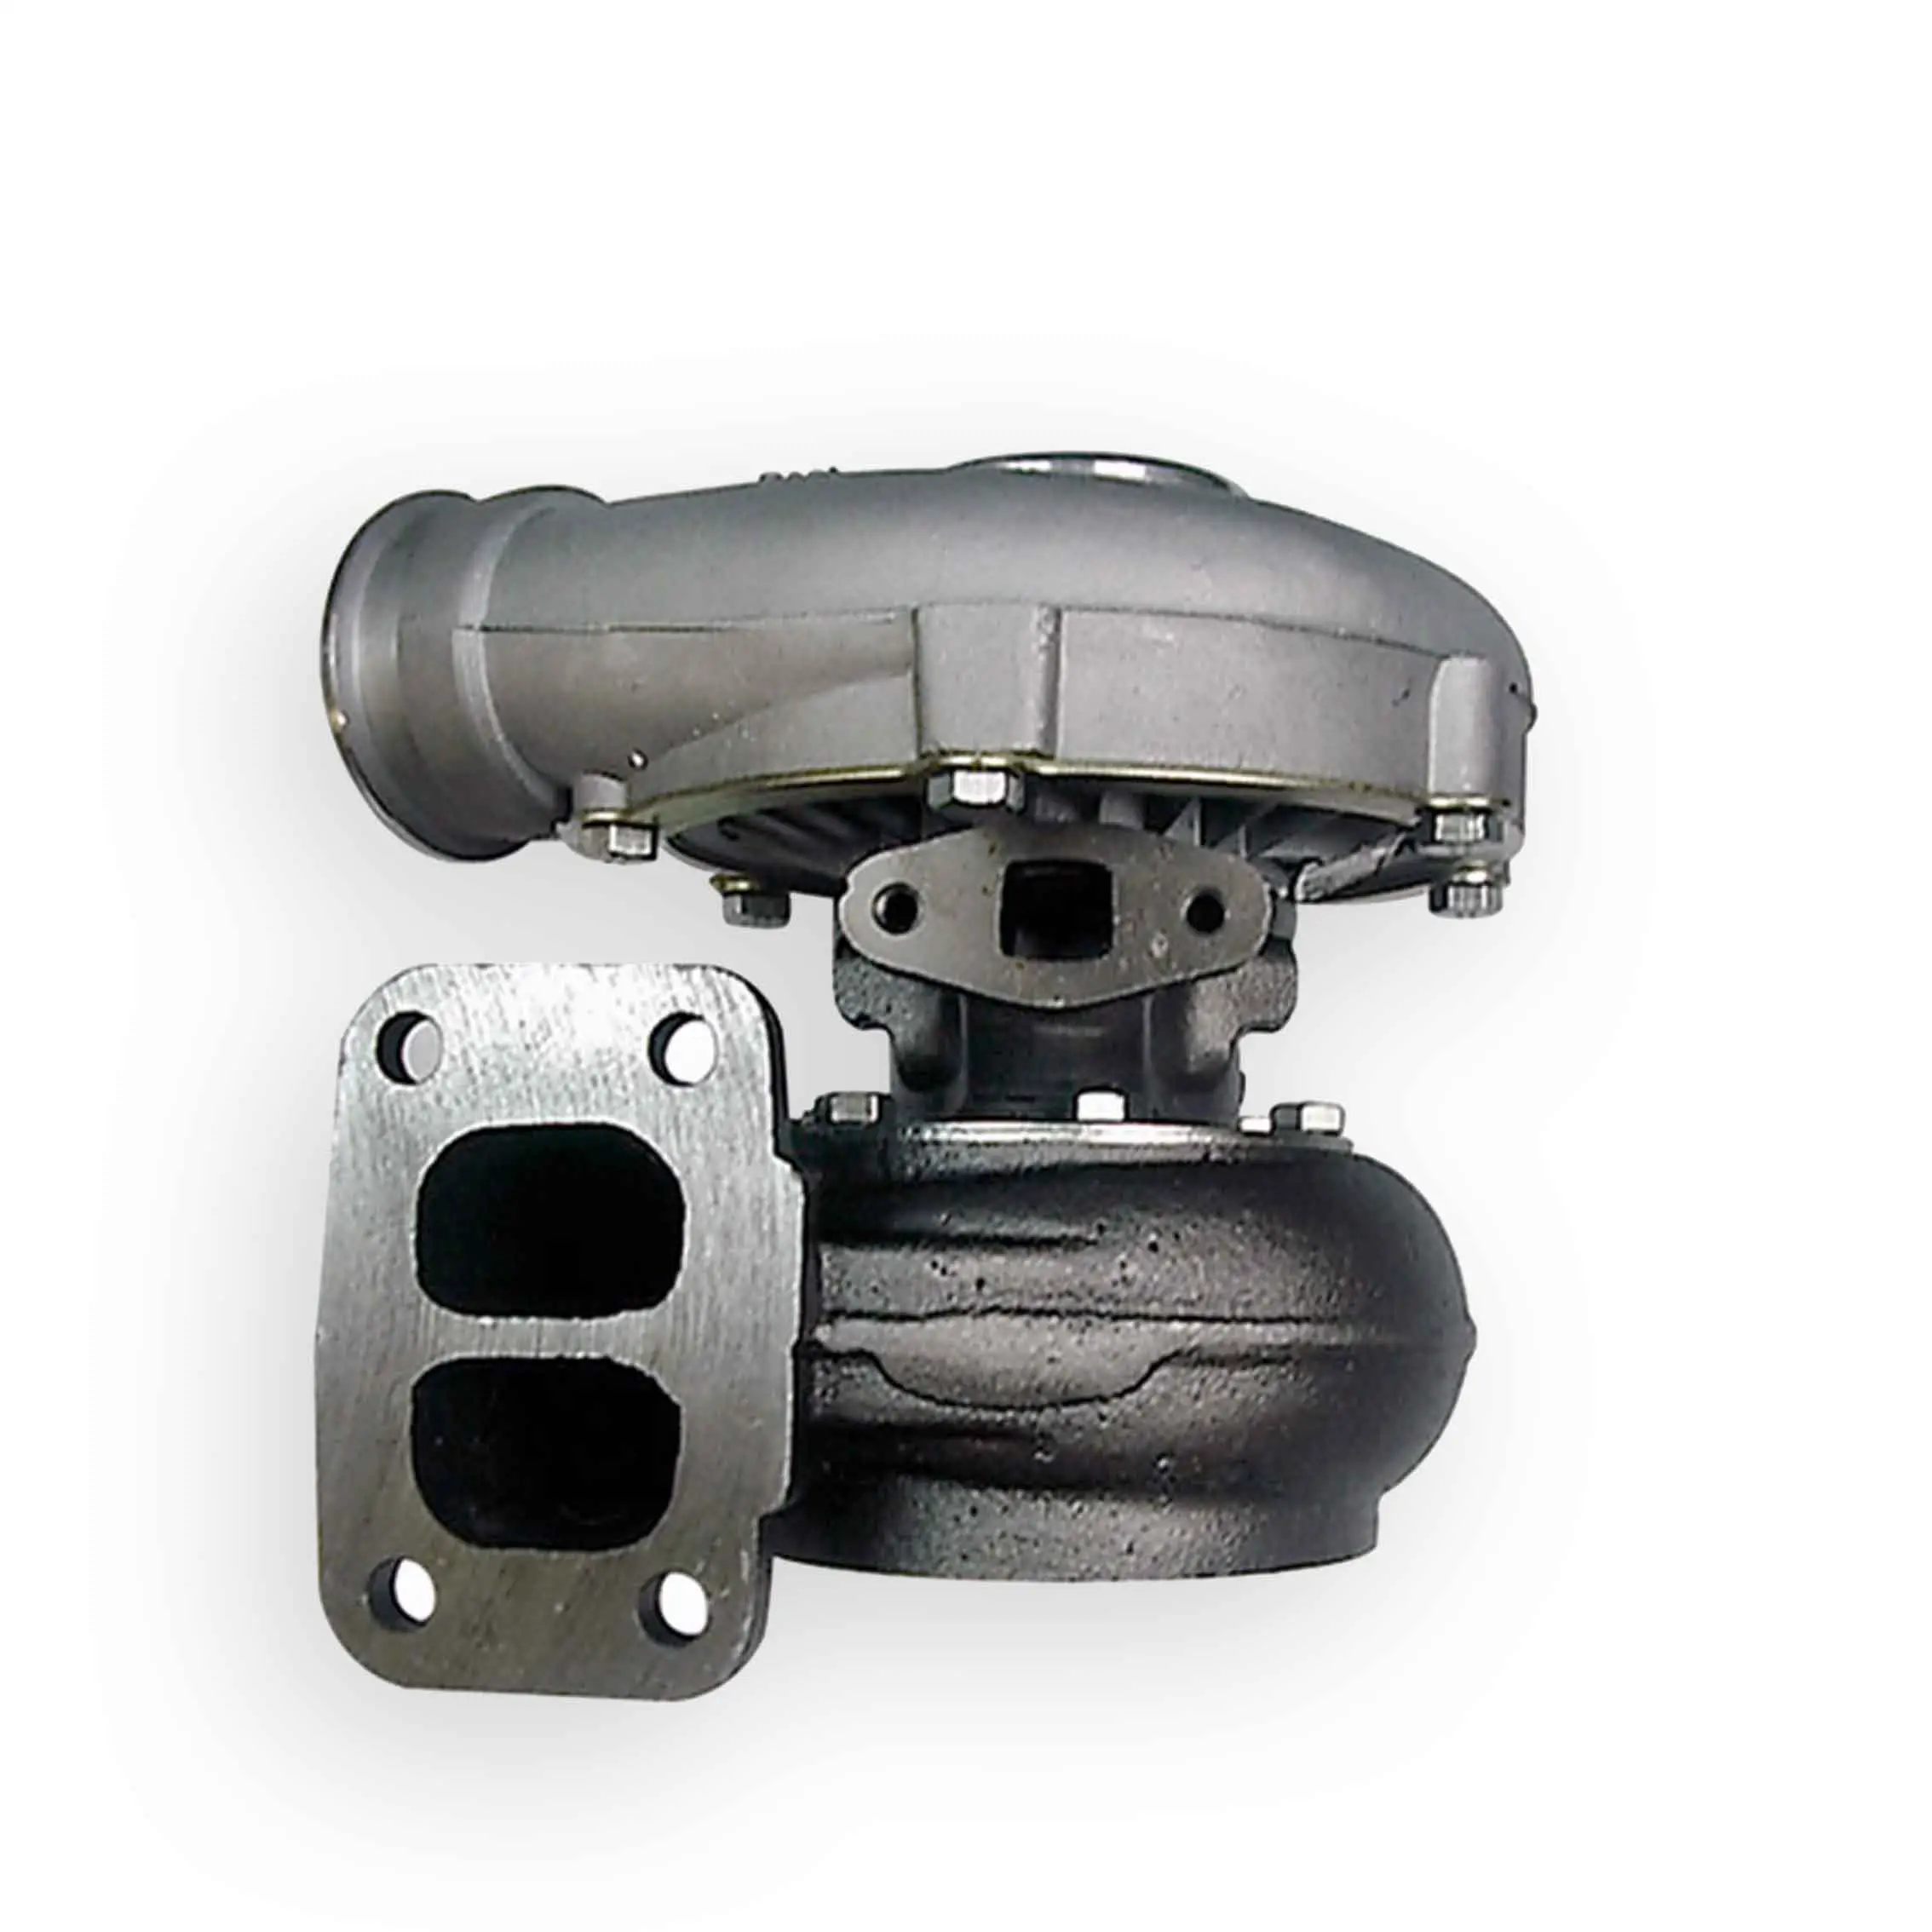 Carregador turbo om352, para mercedes benz caminhão t04 465366-0001 465366-0013